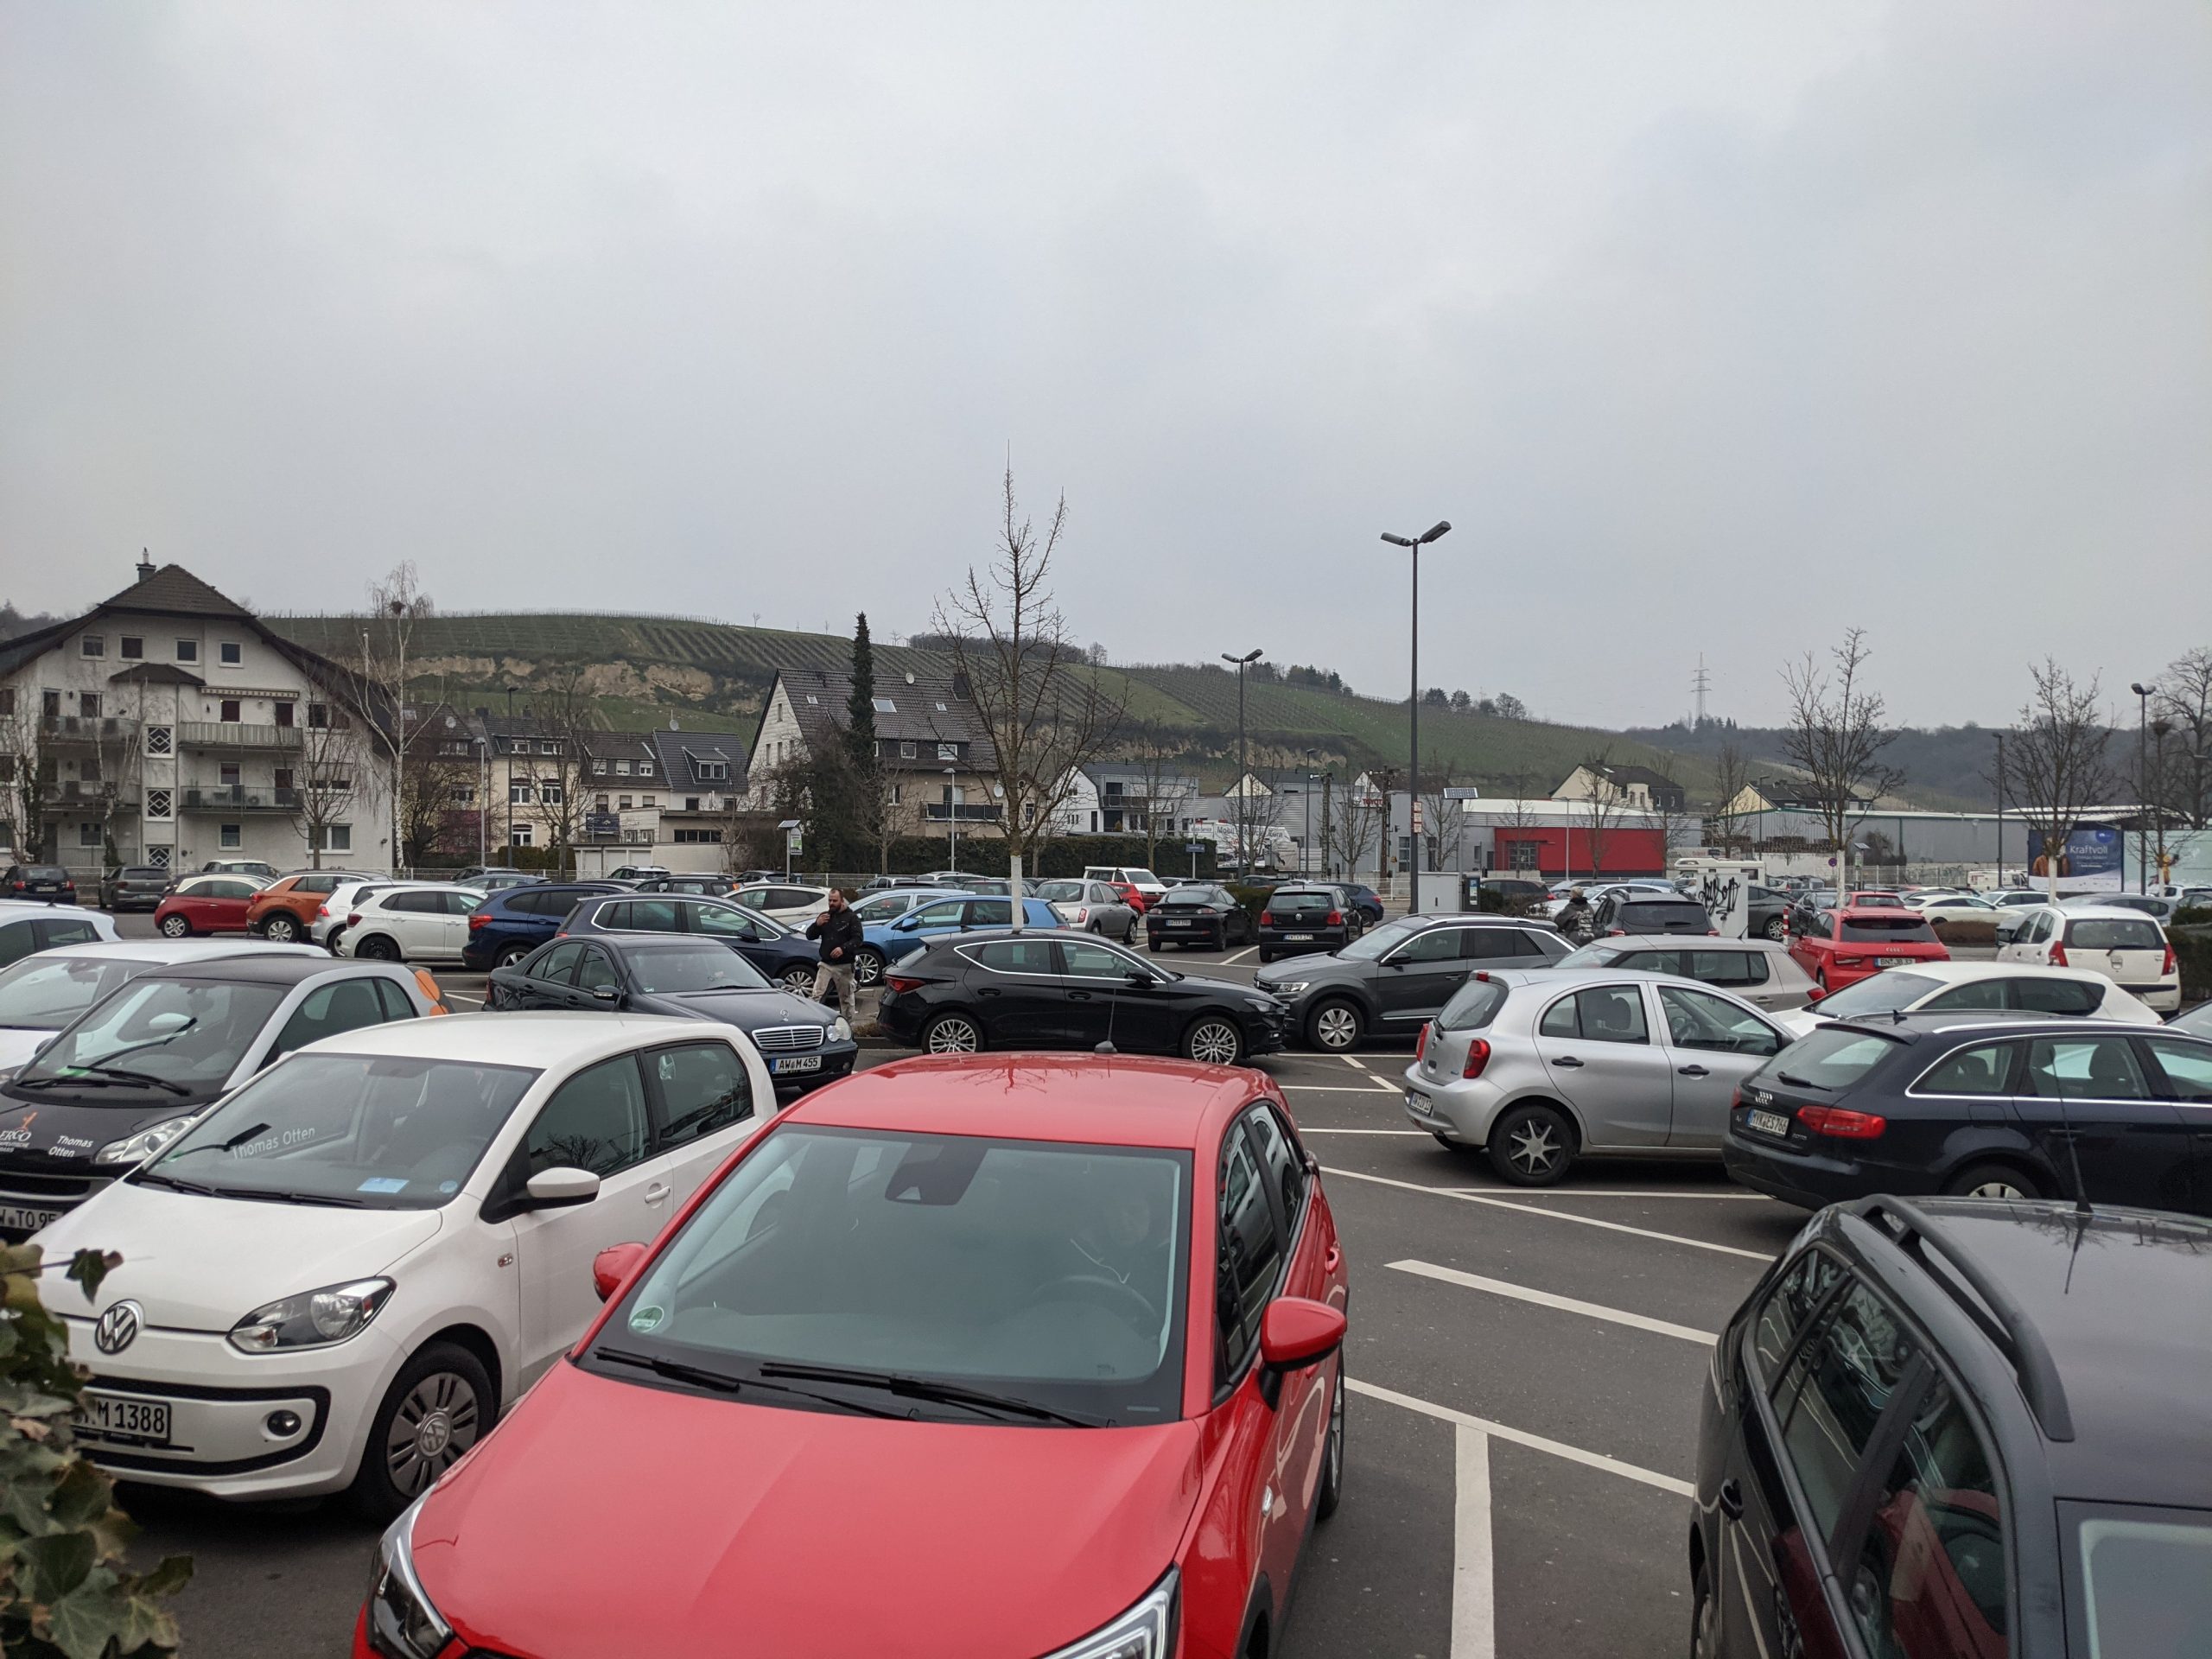 Parkplätze für PKW – Nicht ausreichend im Zeitraum der Landesgartenschau